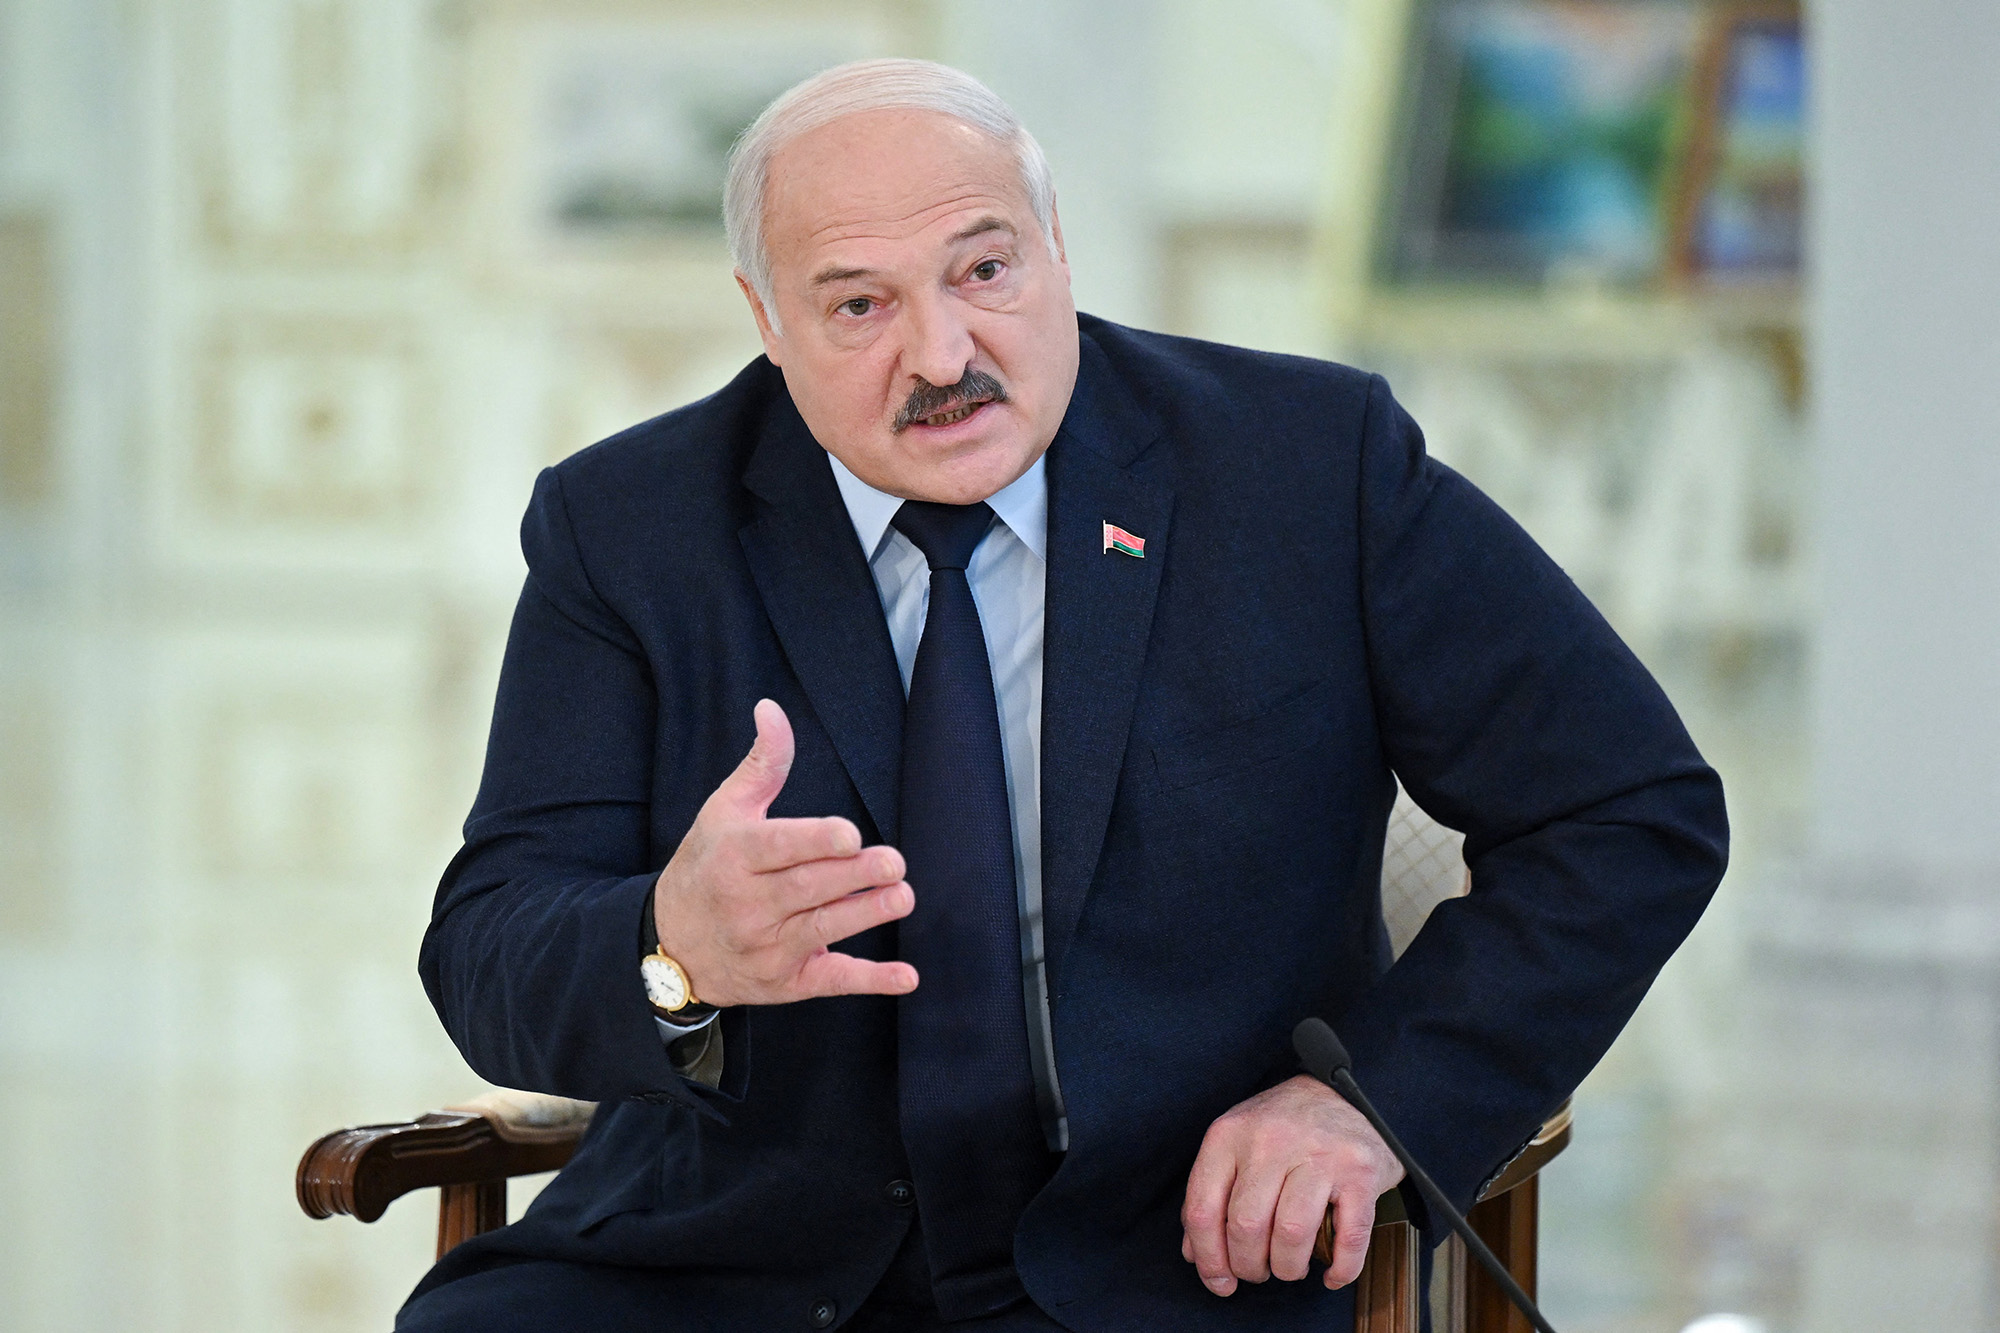 TT Belarus Lukashenko tiết lộ đã thuyết phục ông Putin tha cho ông trùm Wagner Prigozhin như thế nào - Ảnh 1.